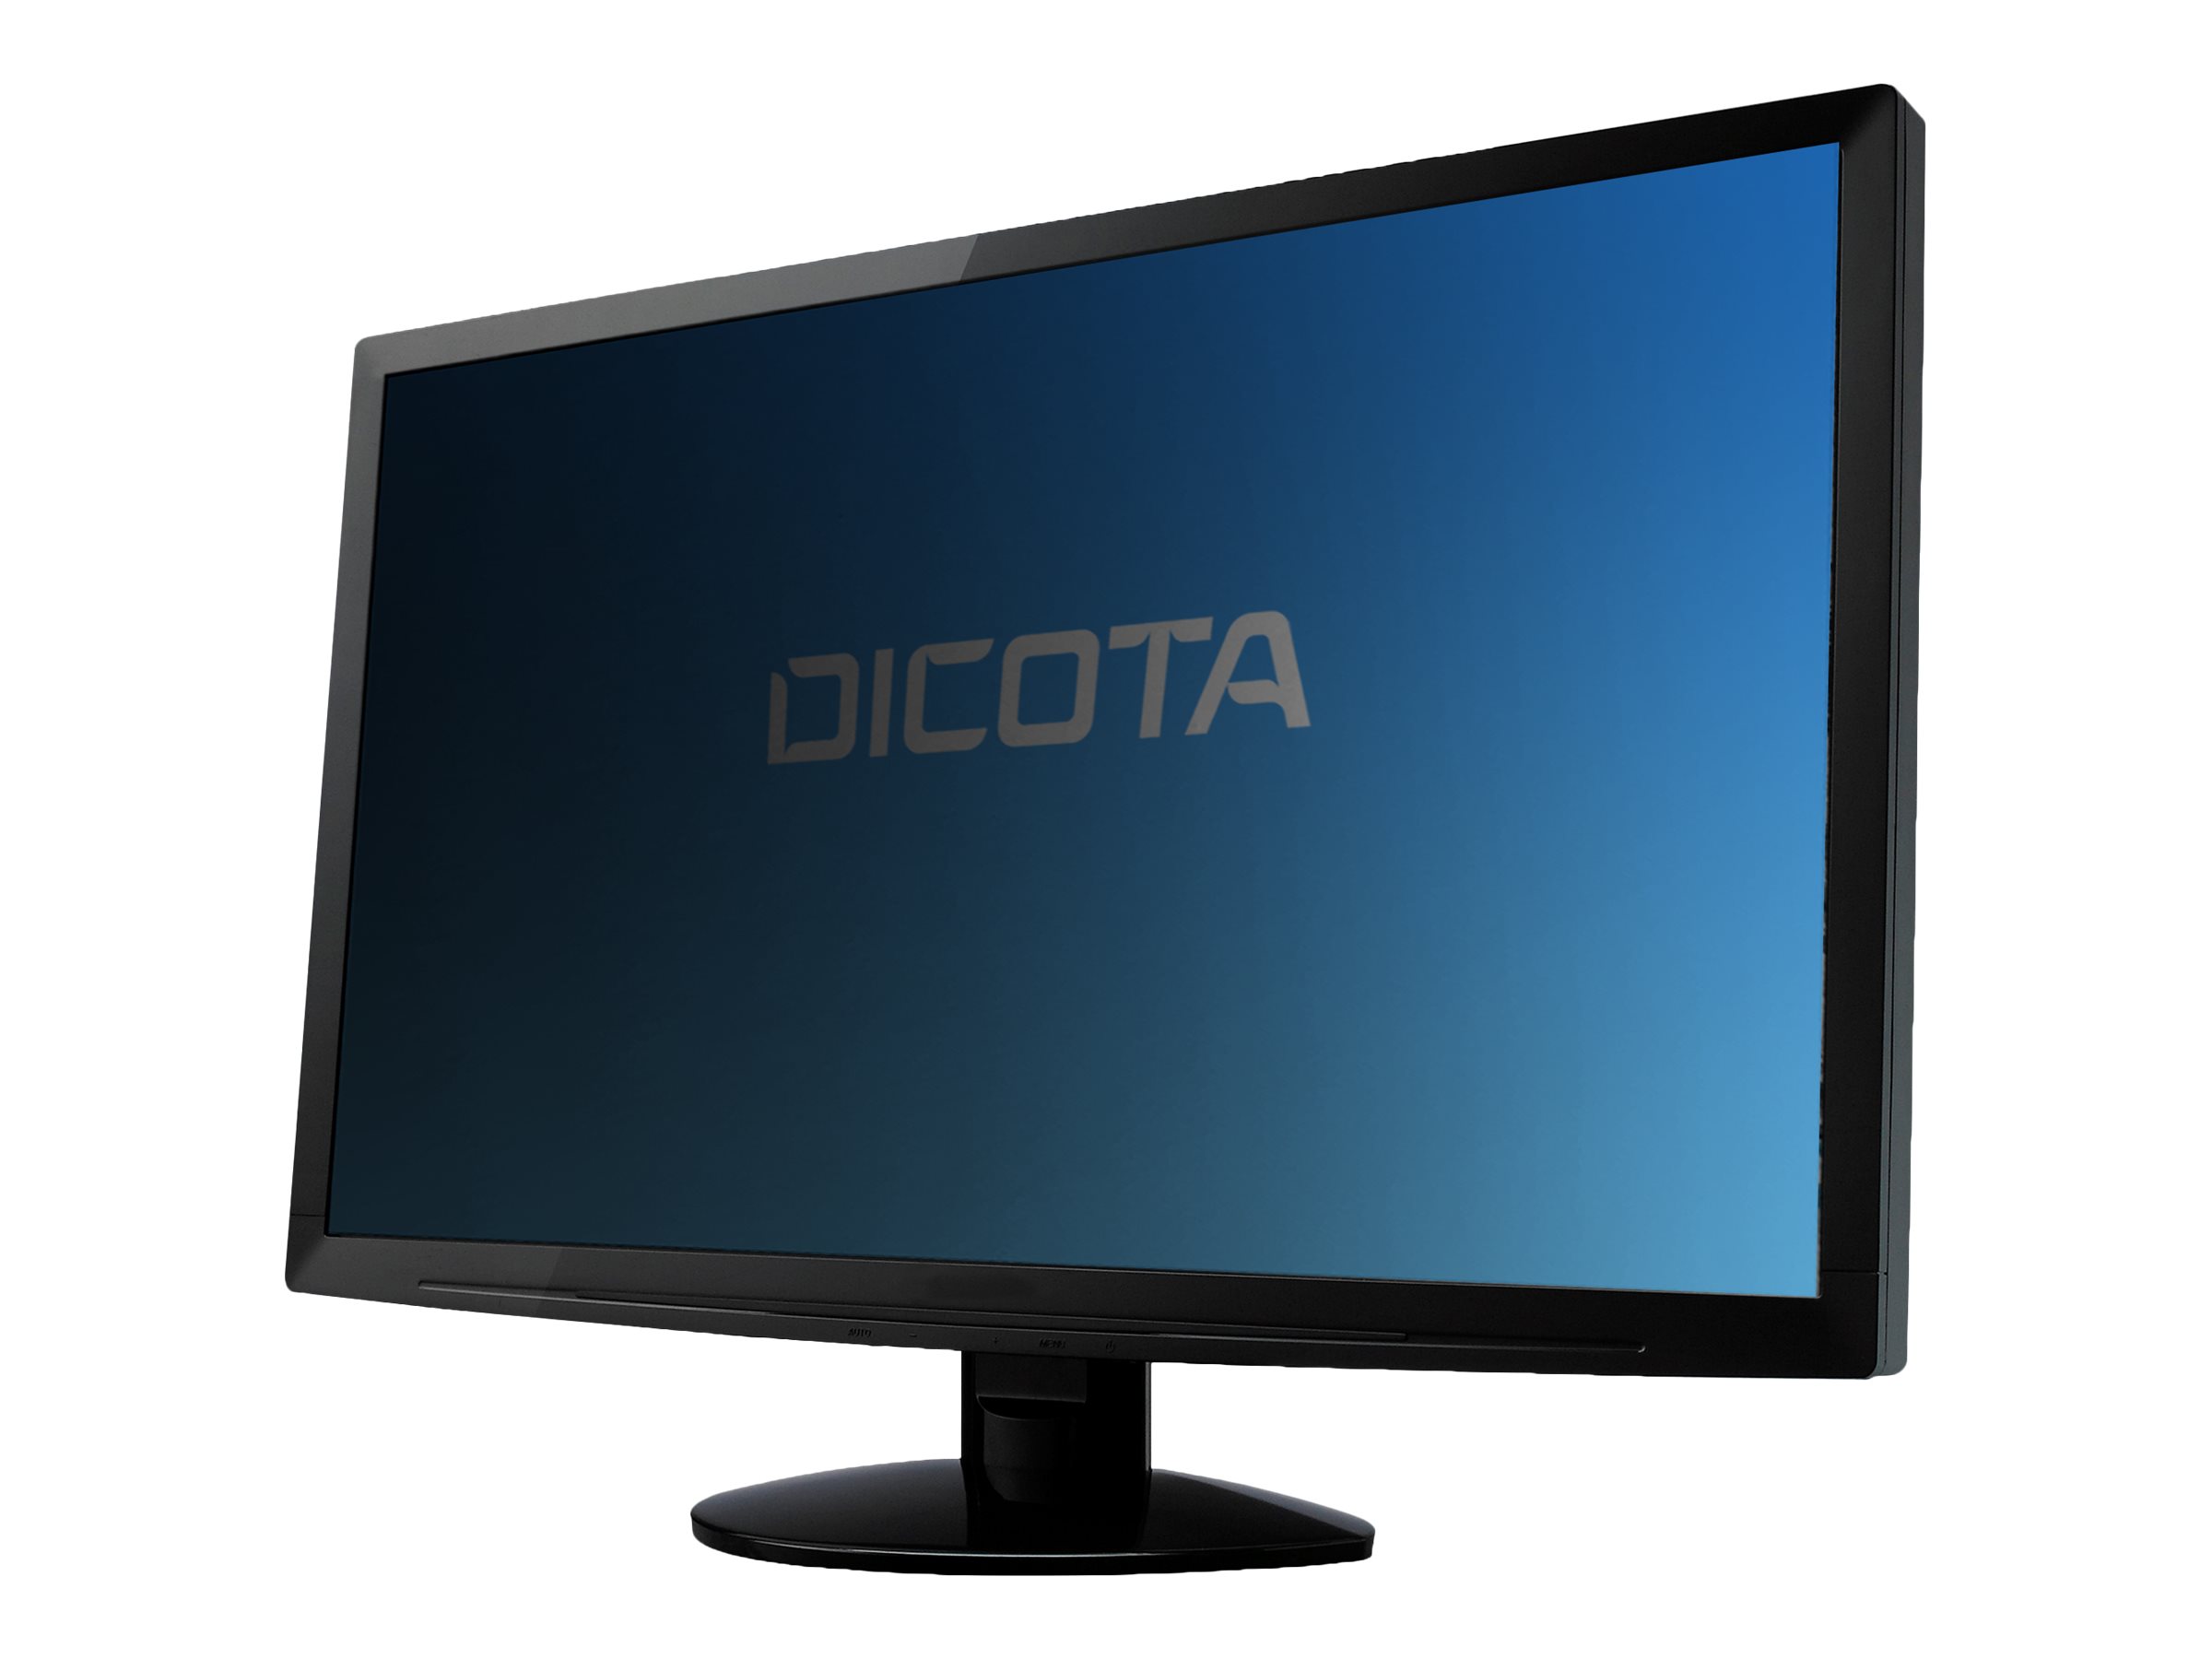 DICOTA - Filtre anti-indiscrétion - 4 voies - amovible - adhésif - 22.5" - noir - pour Lenovo ThinkVision T23d-10 - D70370 - Accessoires pour écran